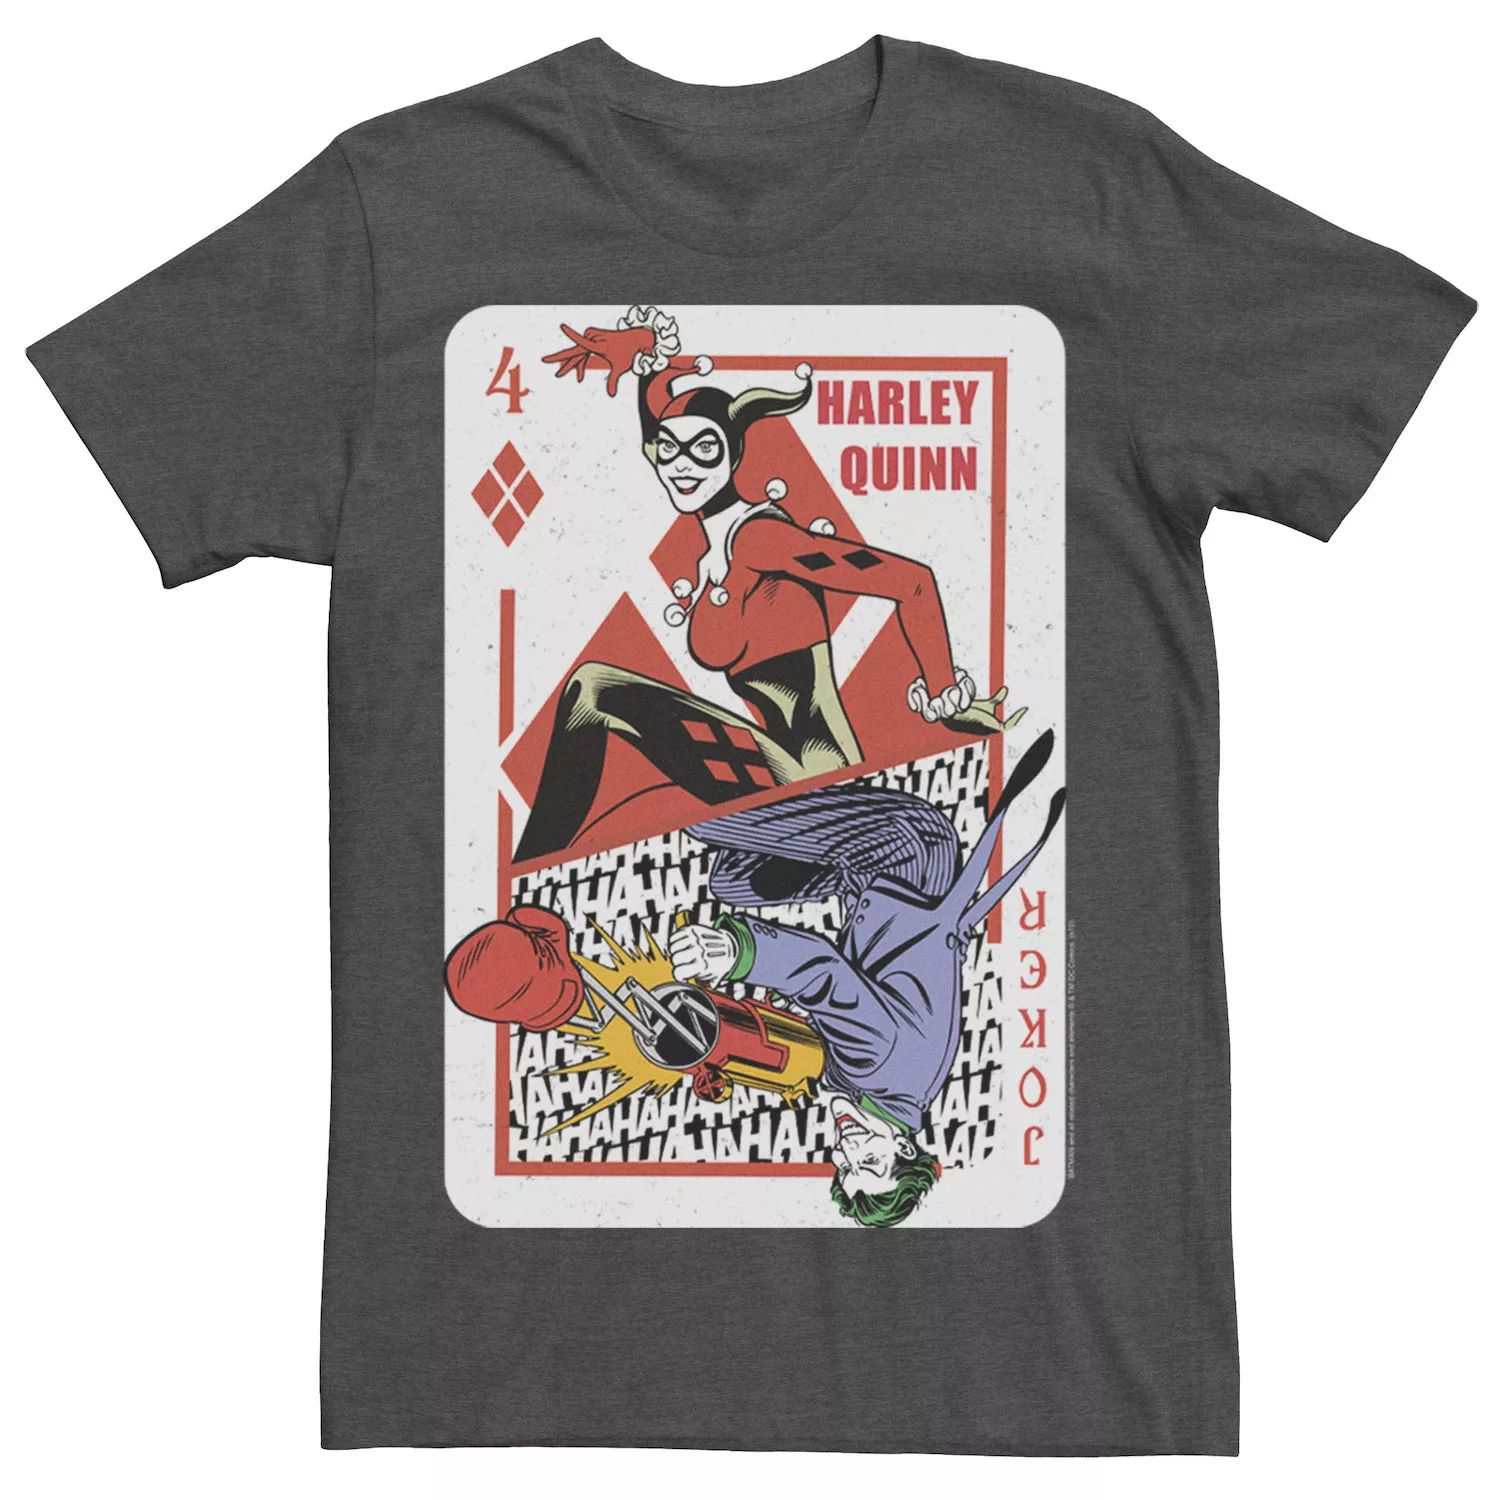 Мужская футболка с игральными картами Harley Quinn Joker DC Comics